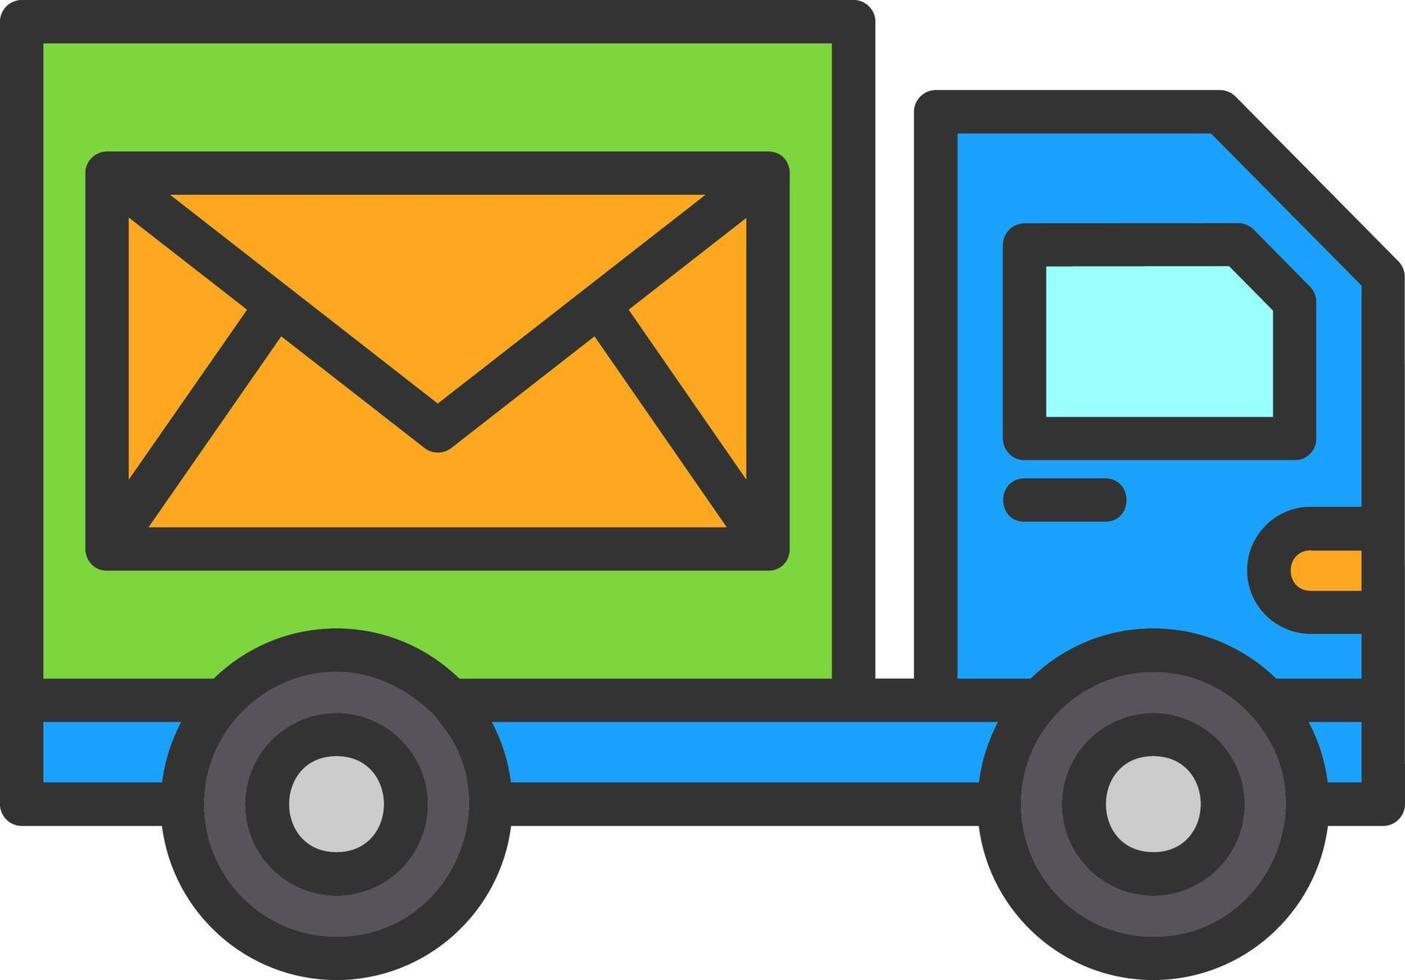 design de ícone de vetor de serviço postal